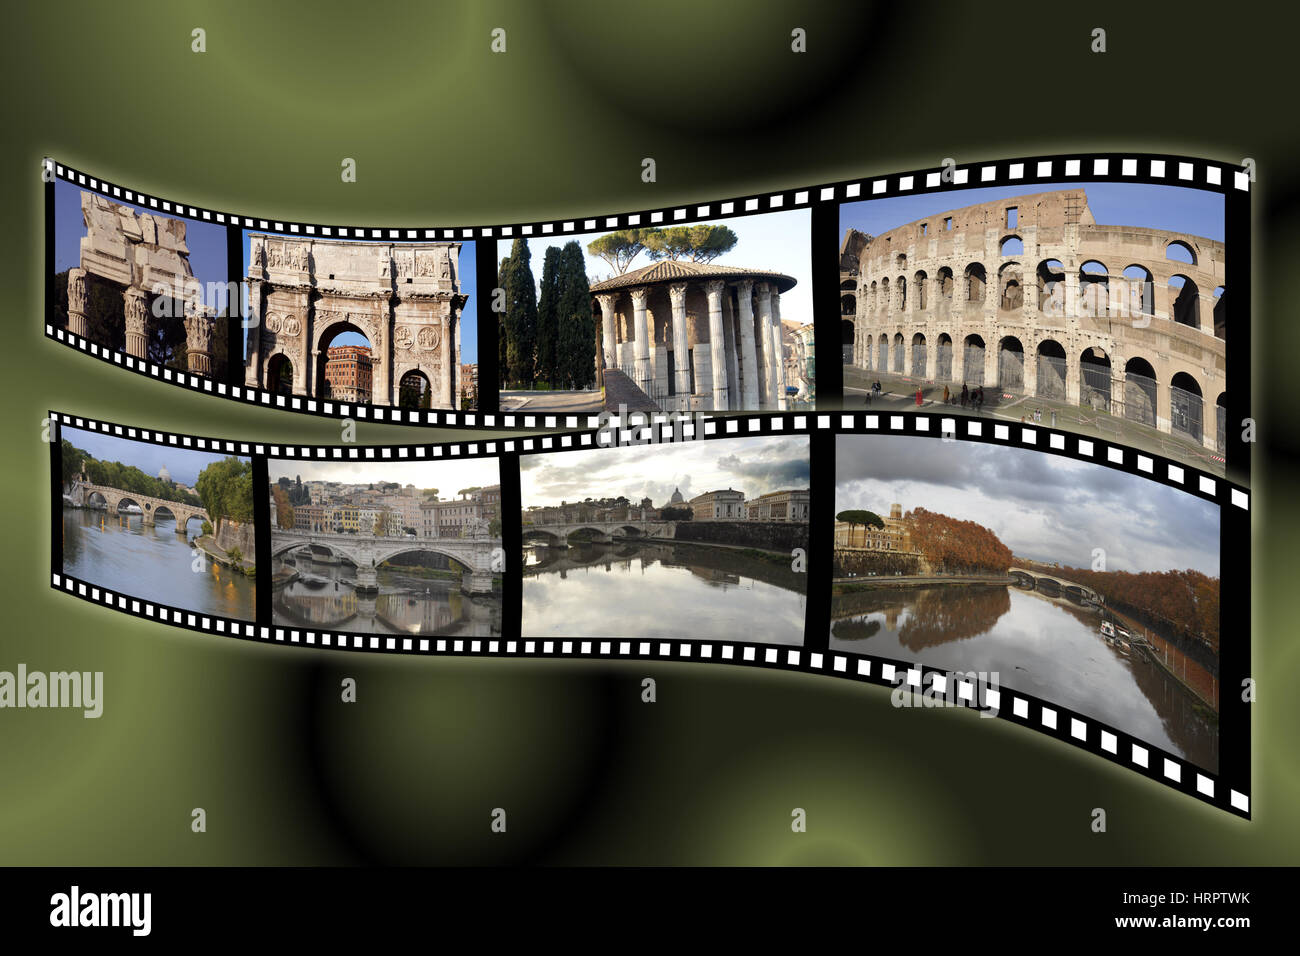 Film film avec images classiques de Rome relatives aux sites archéologiques et sites le long du Tibre Banque D'Images